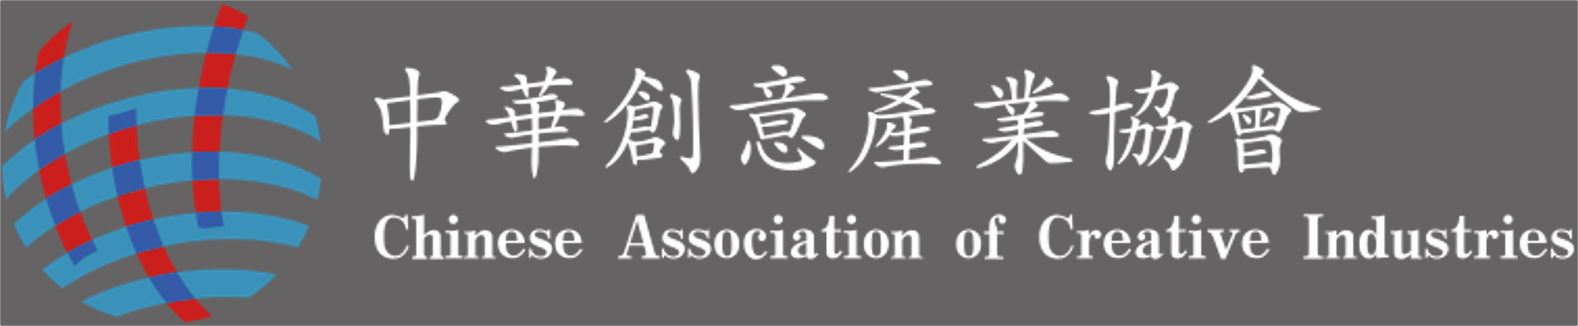 中華創意產業協會